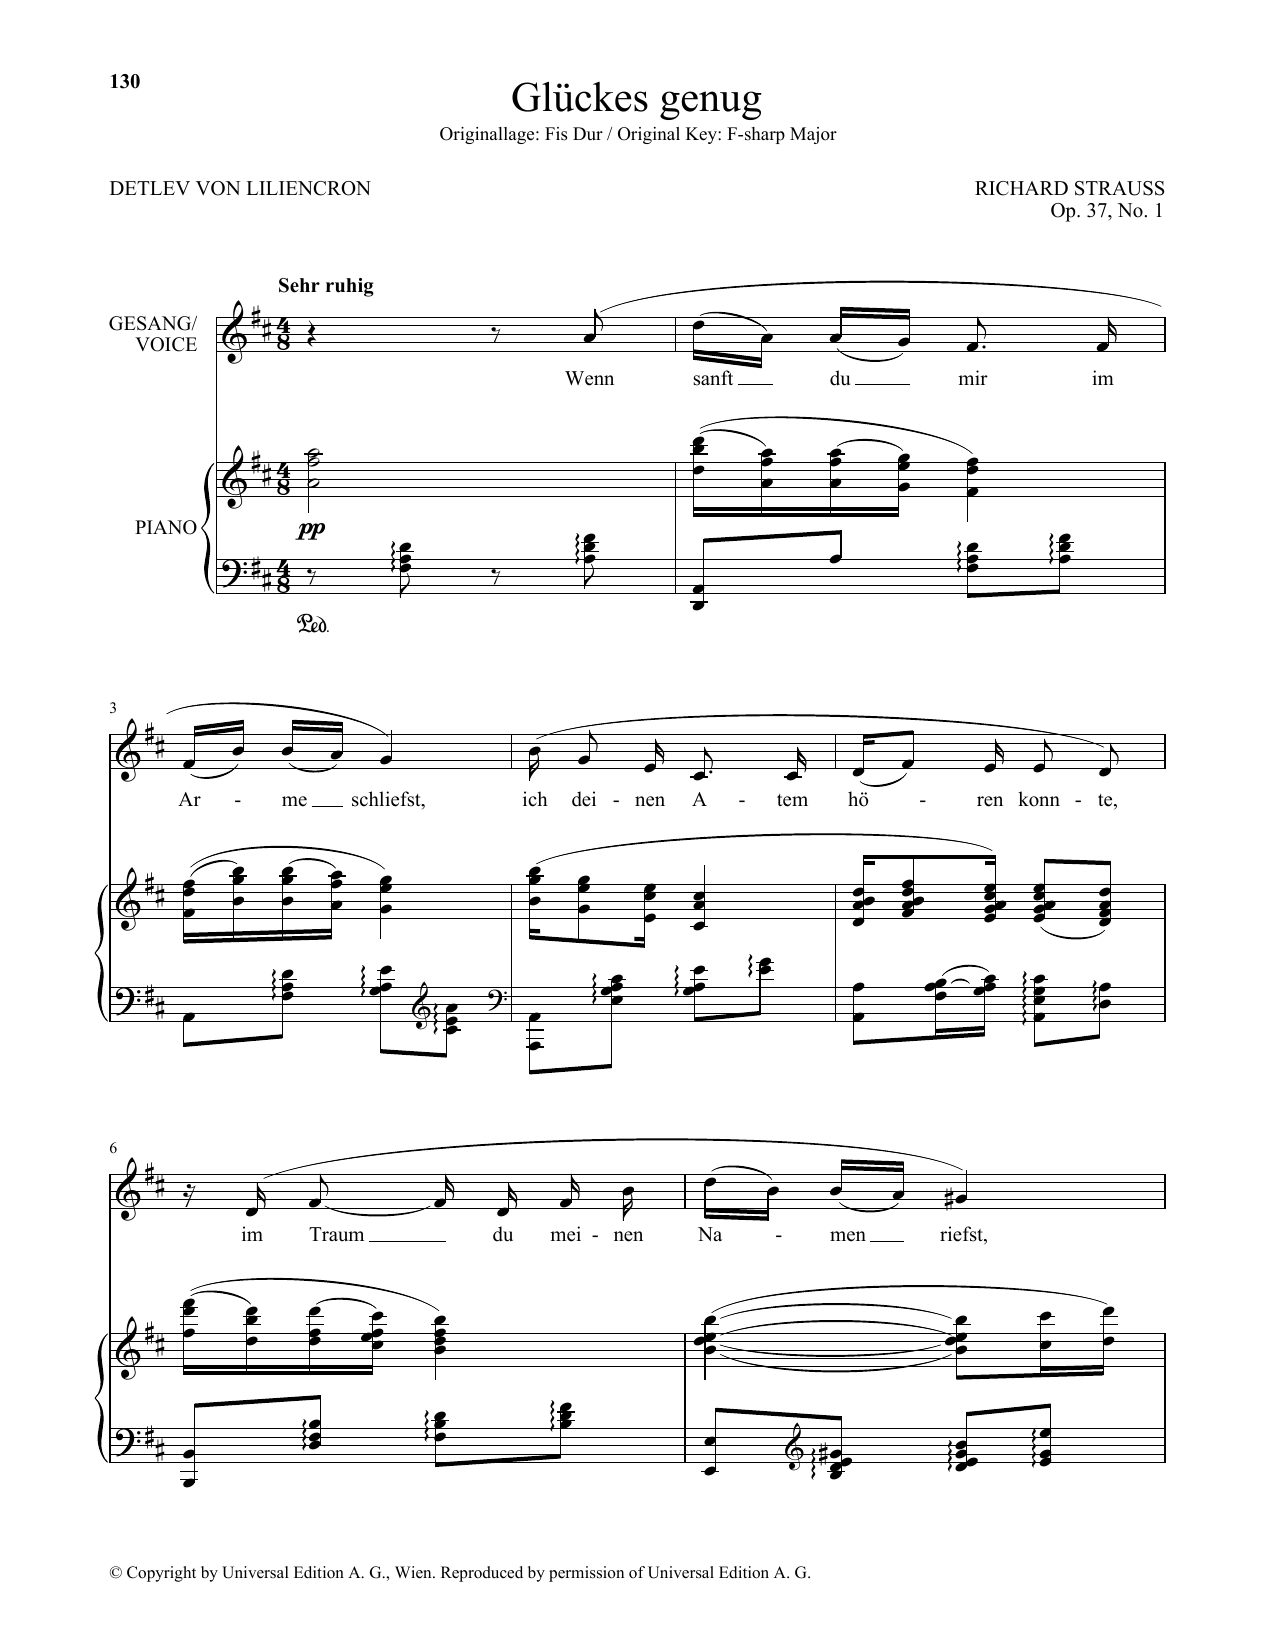 Download Richard Strauss Gluckes Genug (Low Voice) Sheet Music